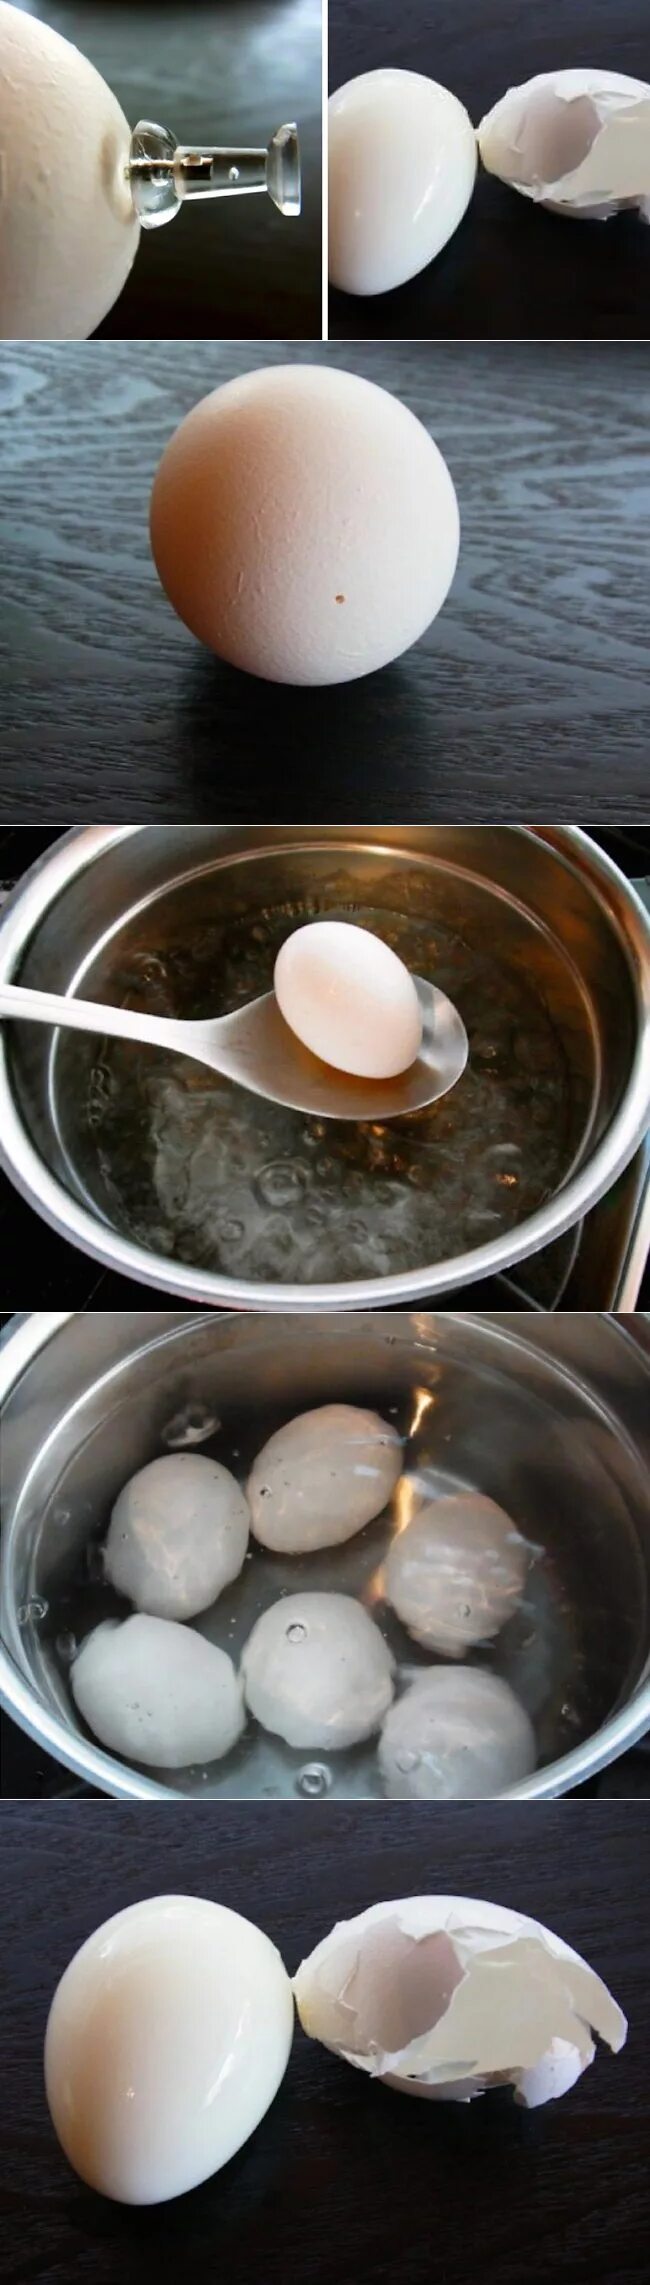 Варить яйца. Как варить яйца. Варка куриных яиц. Варка яиц в холодной воде.